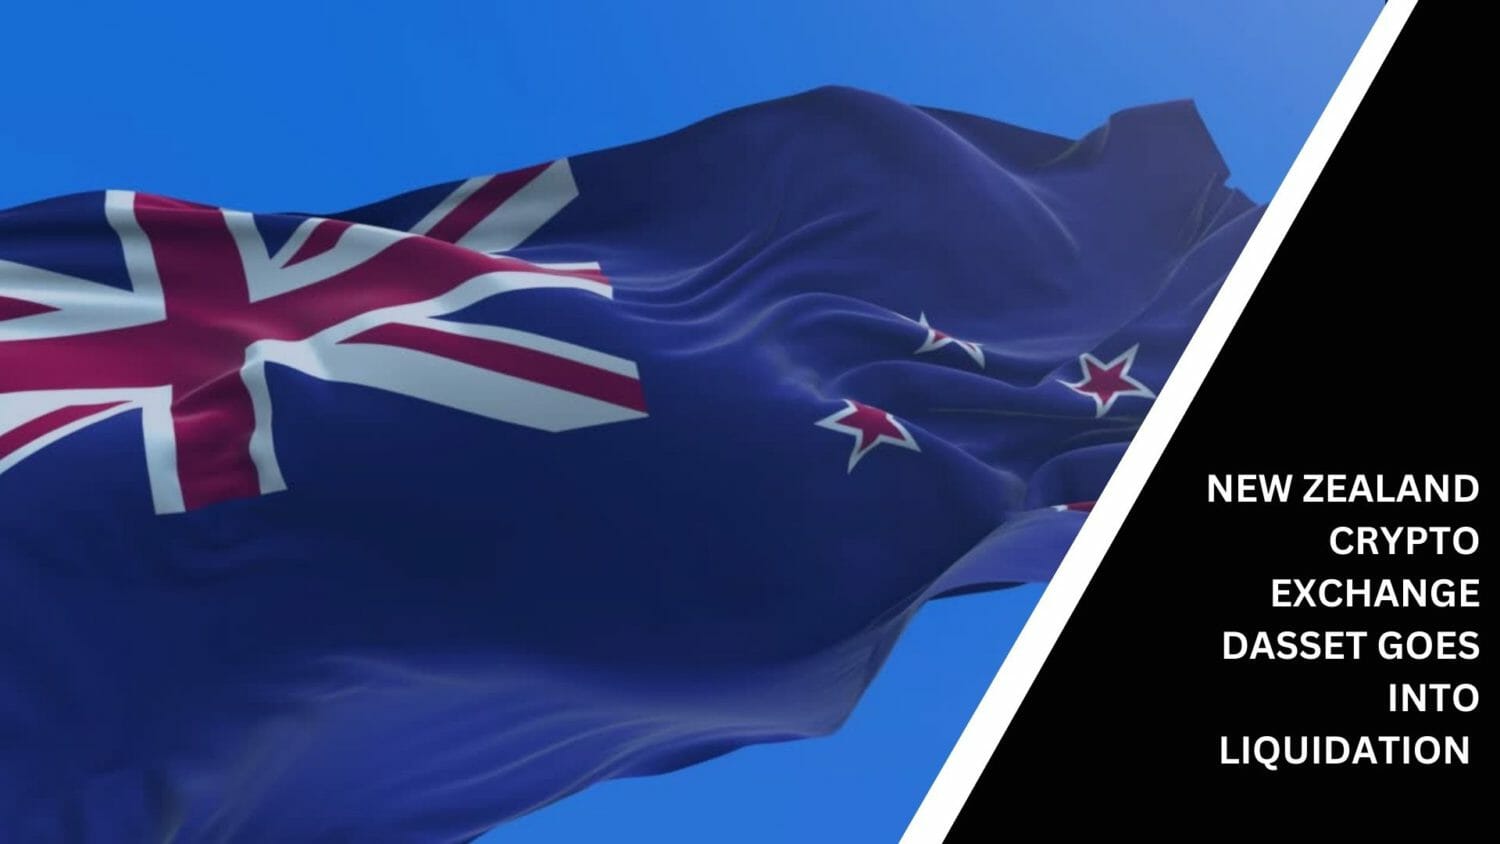 New Zealand Crypto Exchange Dasset Goes Into Liquidation